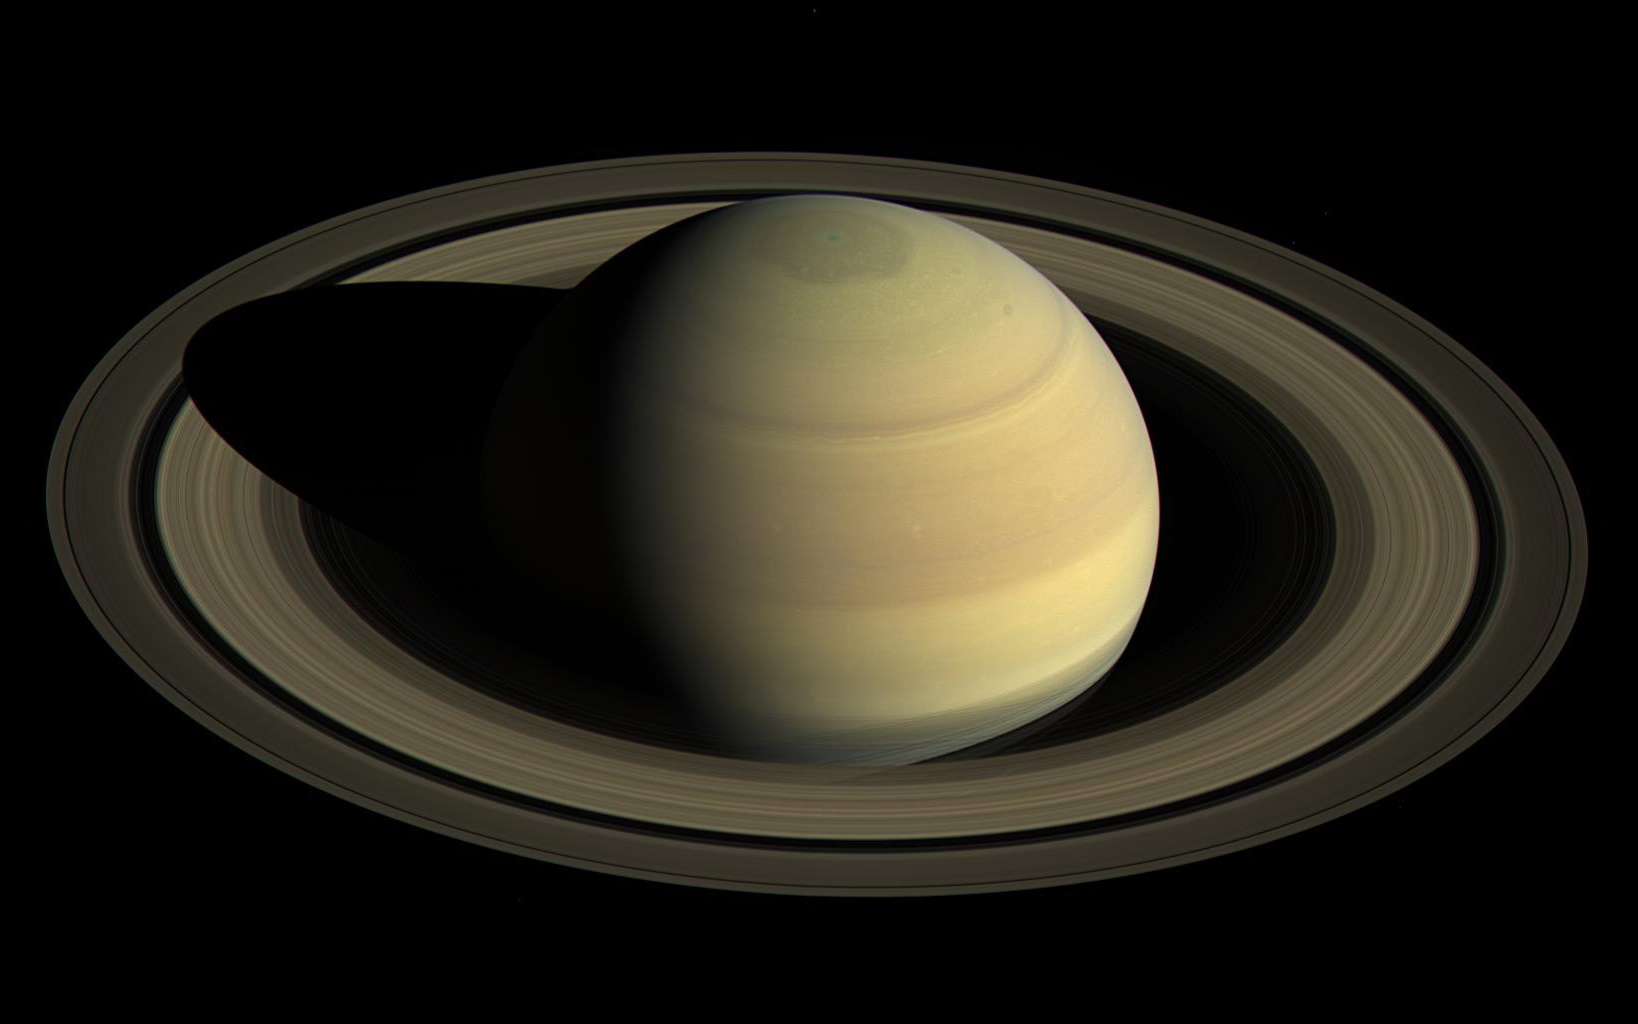 Avec la moisson de données inédites et primordiales réalisée par Cassini, le bond dans la connaissance de Saturne est énorme. © Nasa, JPL-Caltech, Space Science Institute